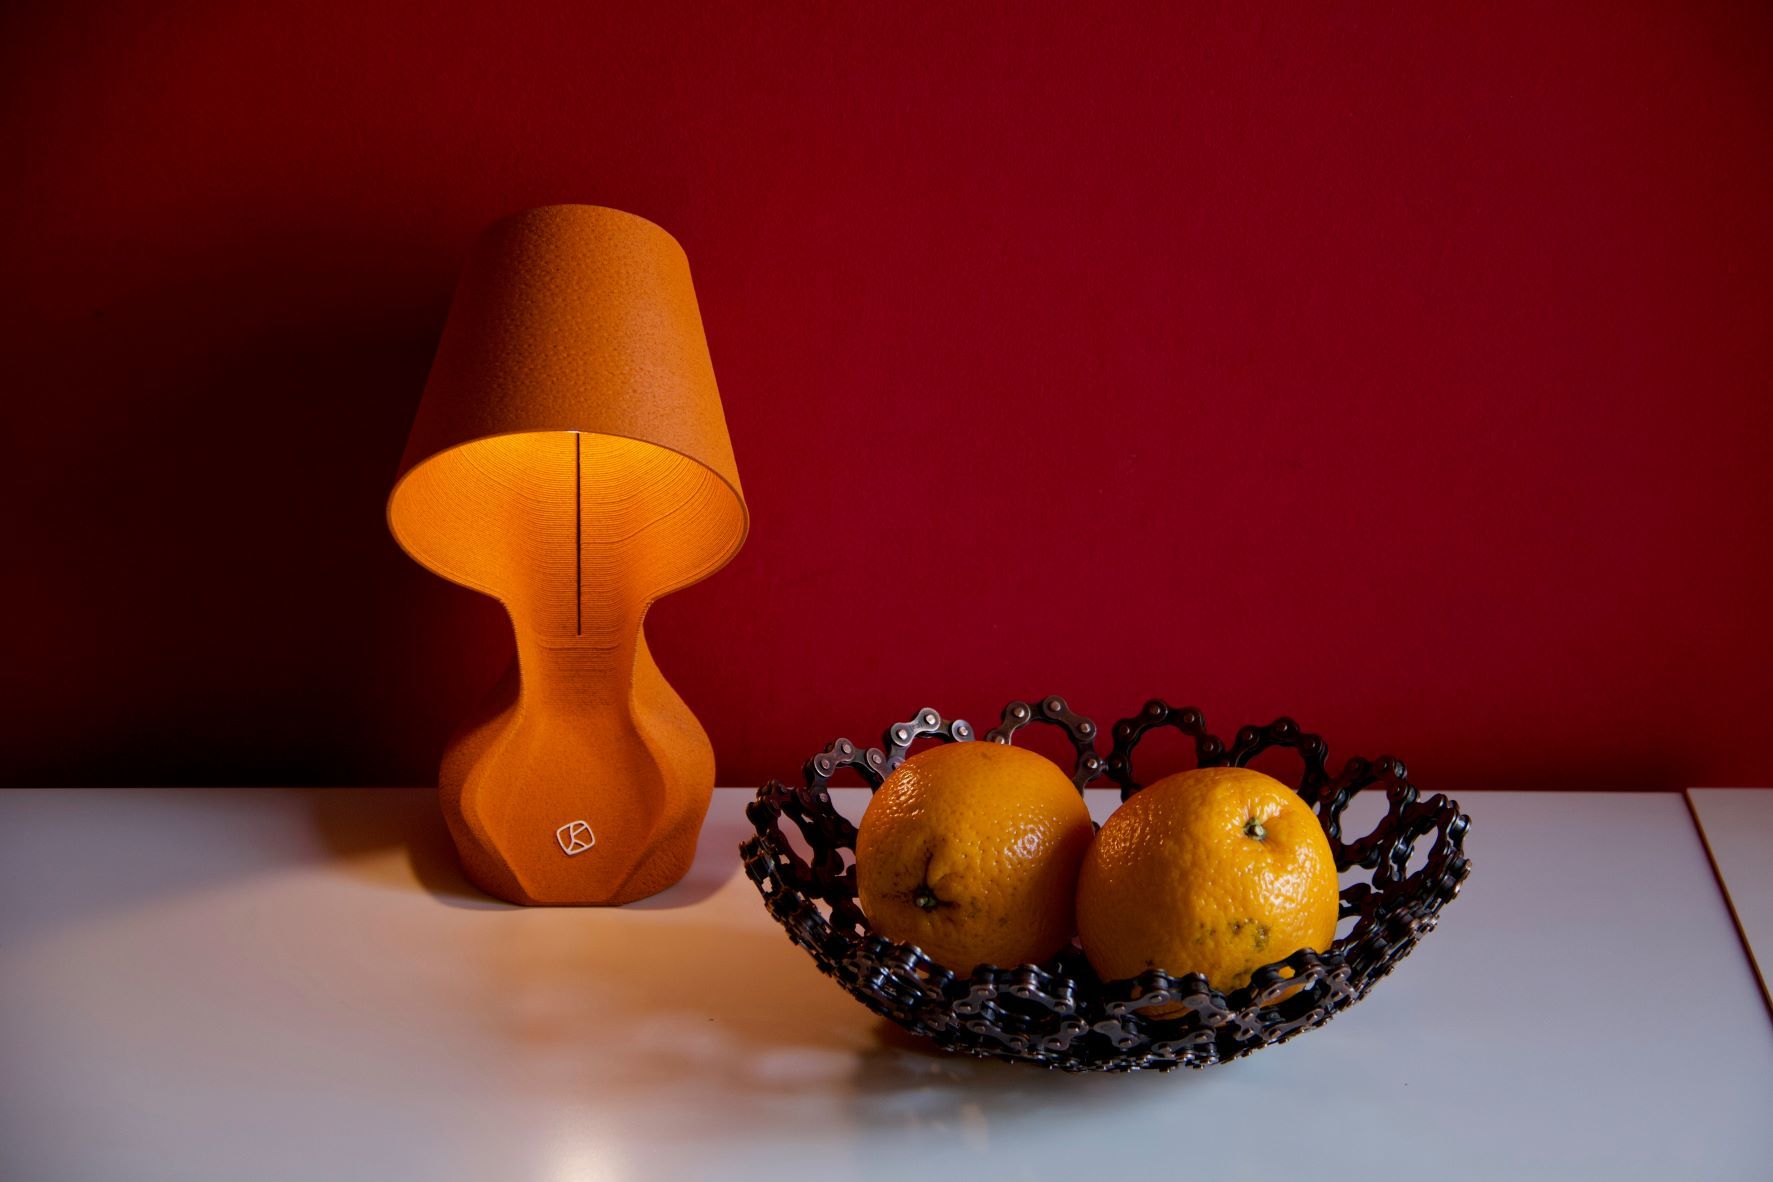 オレンジの皮の新素材で作った、テーブルランプを5月19日発売！
サステナブルインテリア「オーミー・ザ・オレンジランプ」